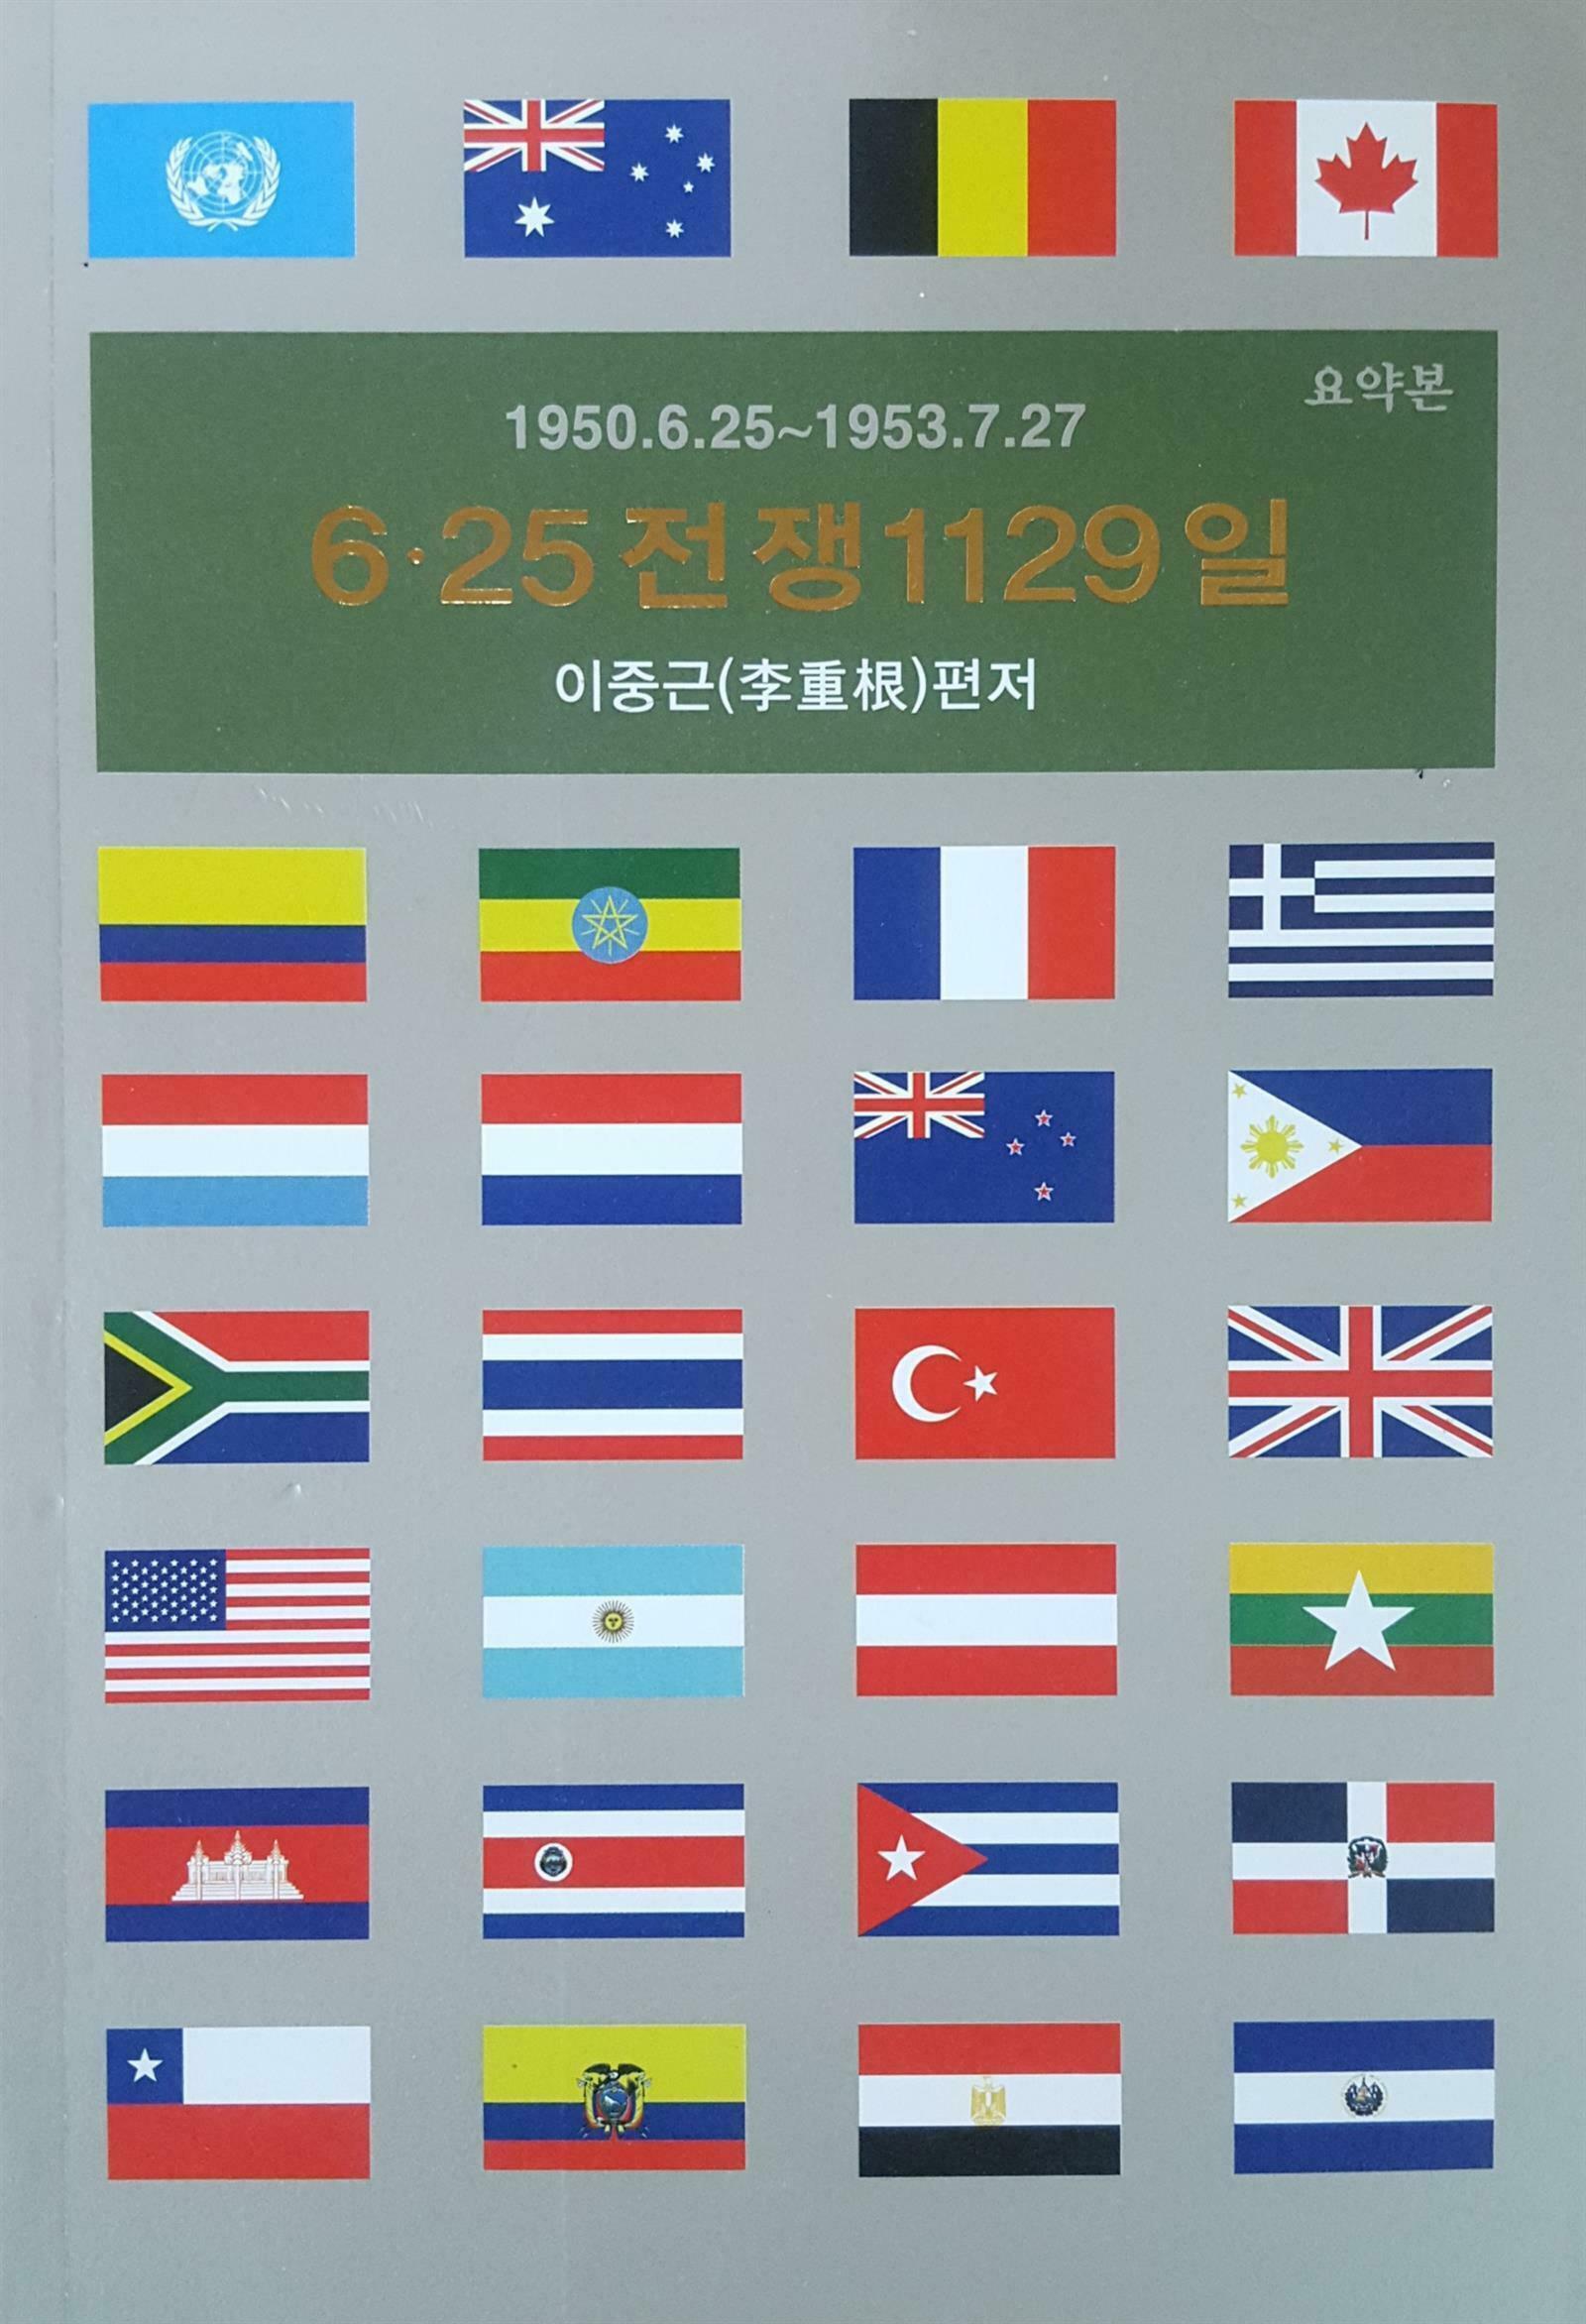 6.25전쟁 1129일 : 요약본 : 1950. 6. 25-1953. 7. 27